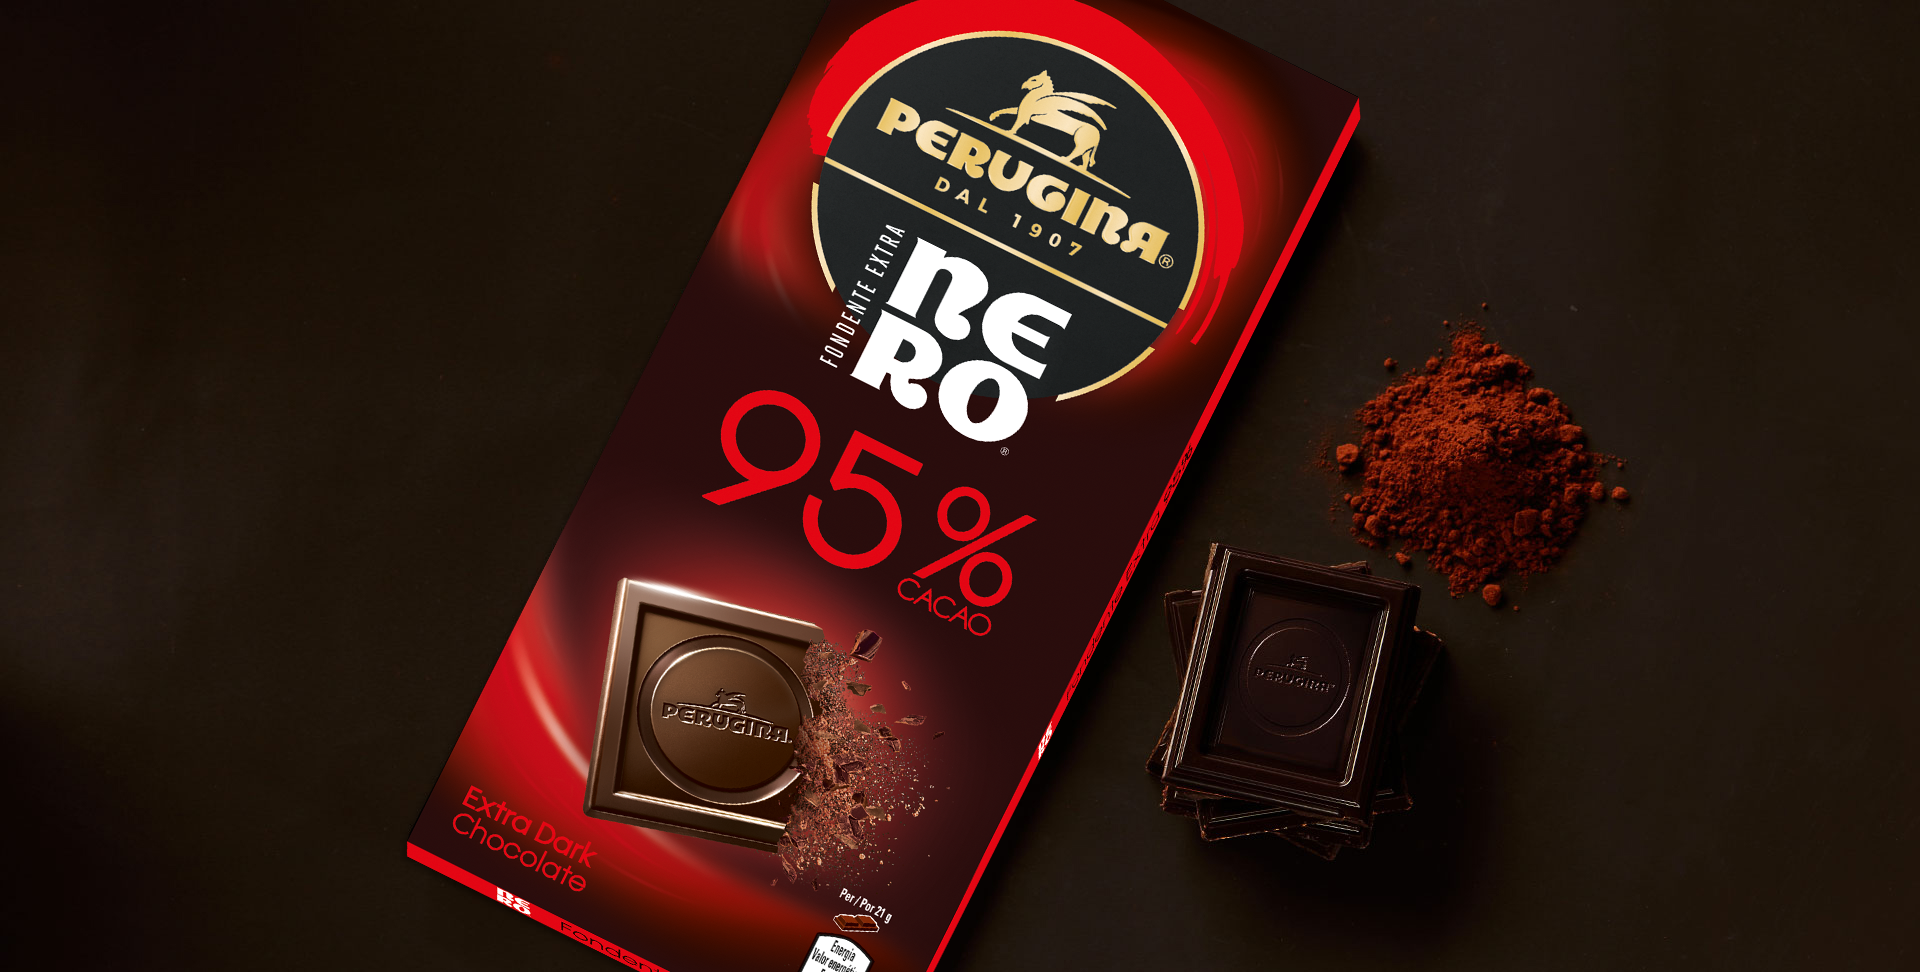 Gusto deciso del cioccolato Nero fondente extra 95%